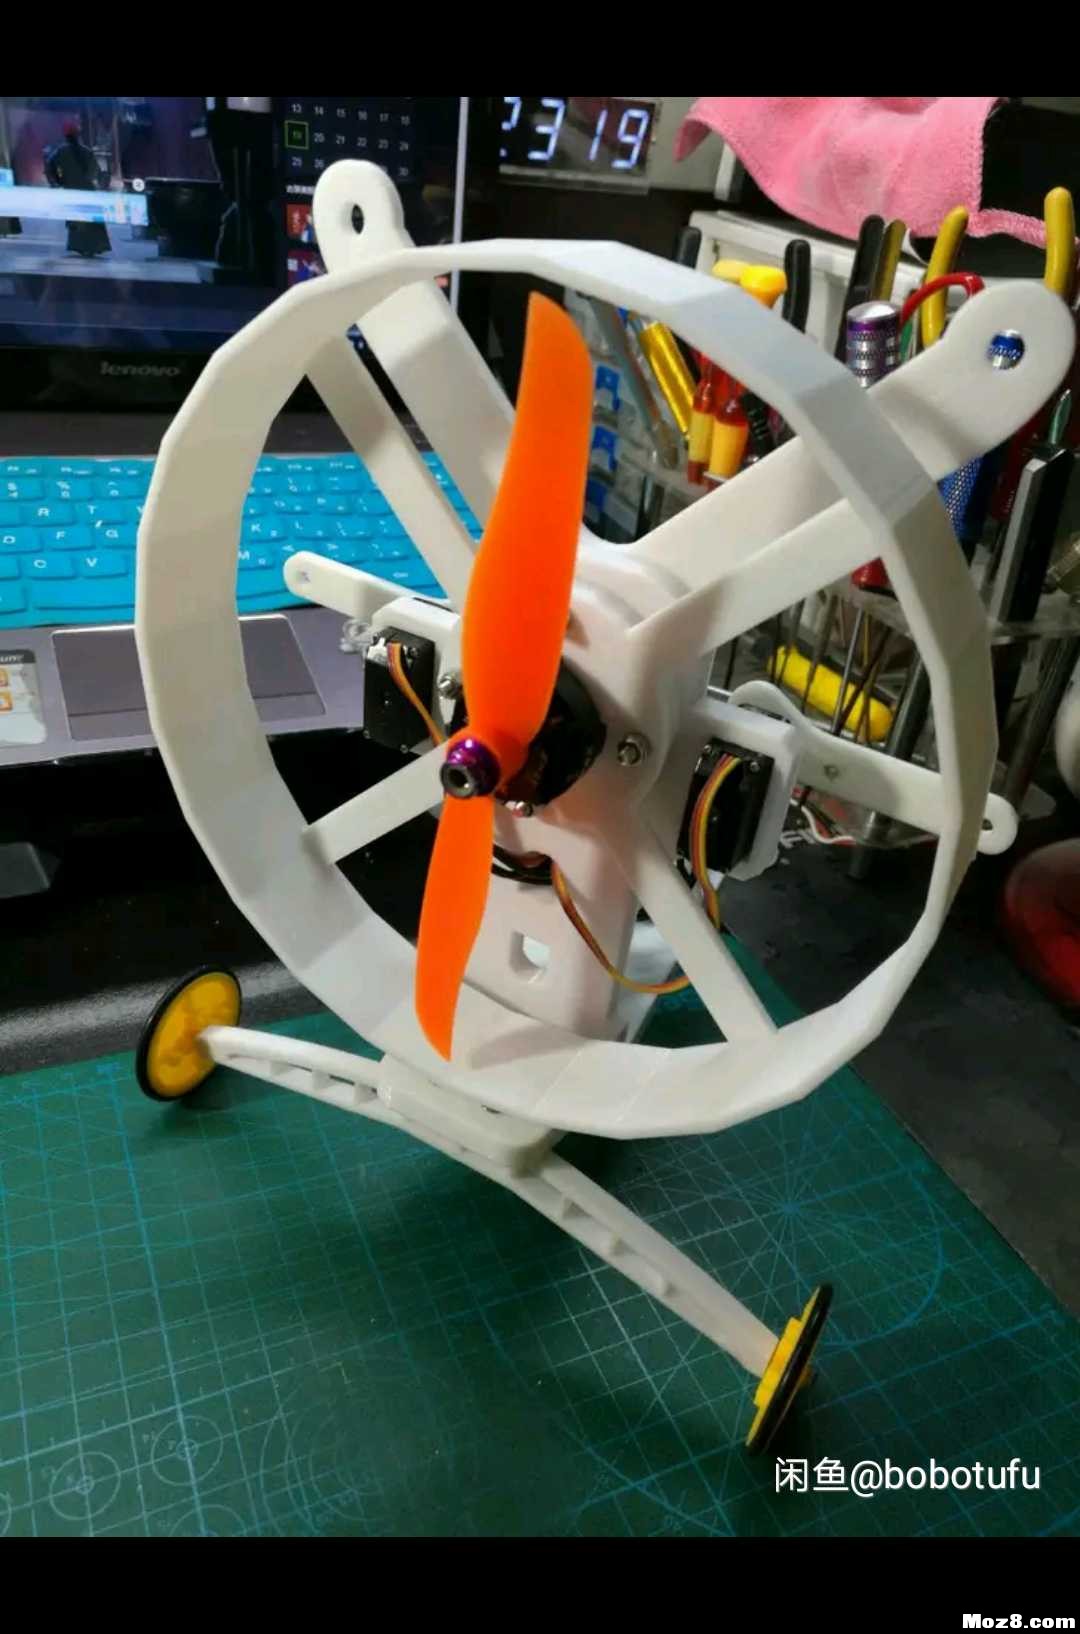 遥控动力伞 3D机架重画 模型,固定翼,舵机,电调,电机 作者:bobotufu 5444 